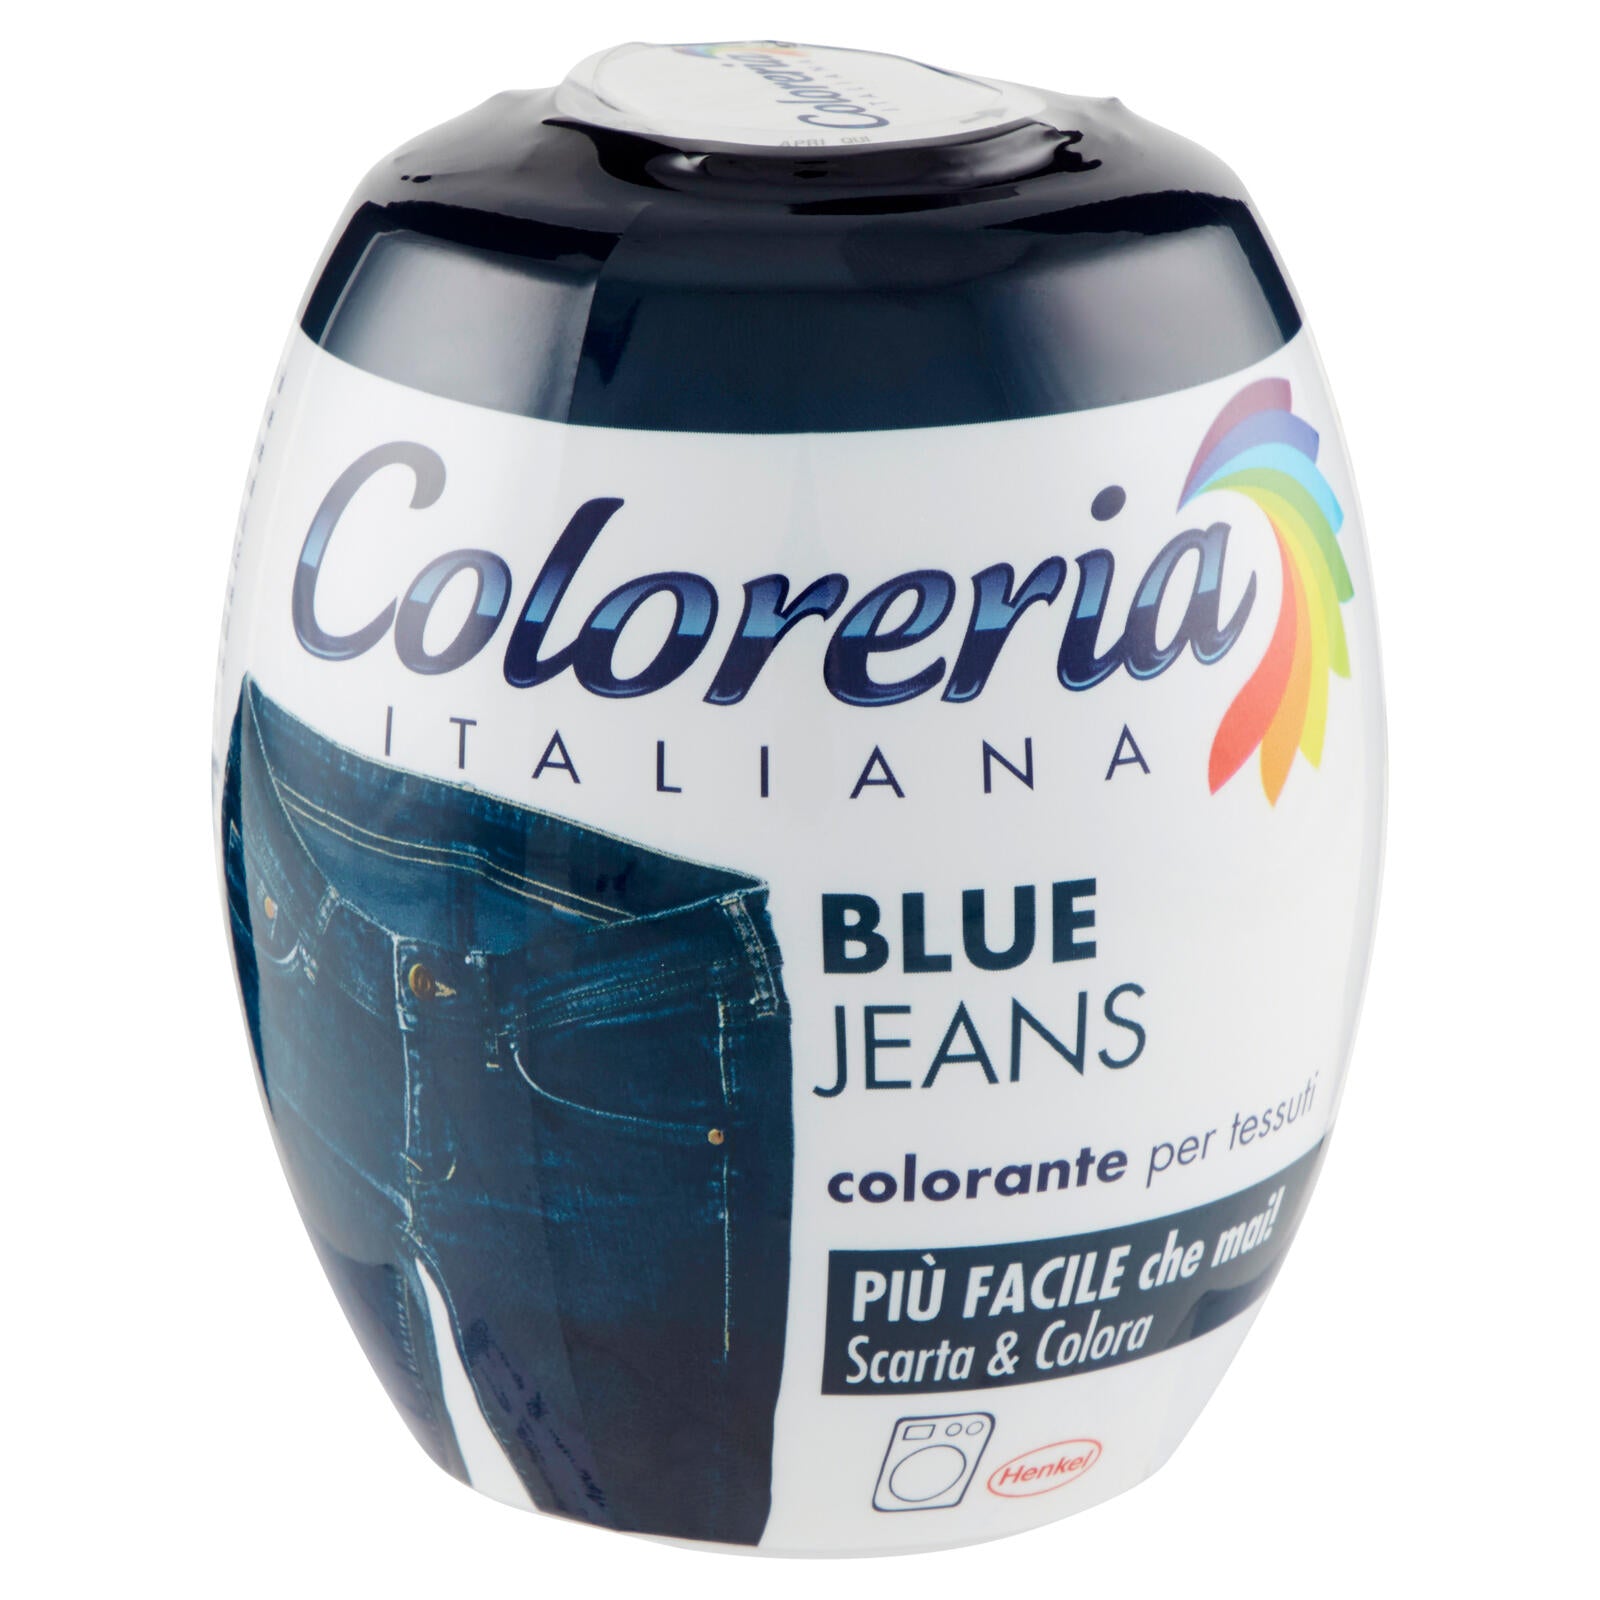 COLORERIA Blue Jeans 350 gr. ->